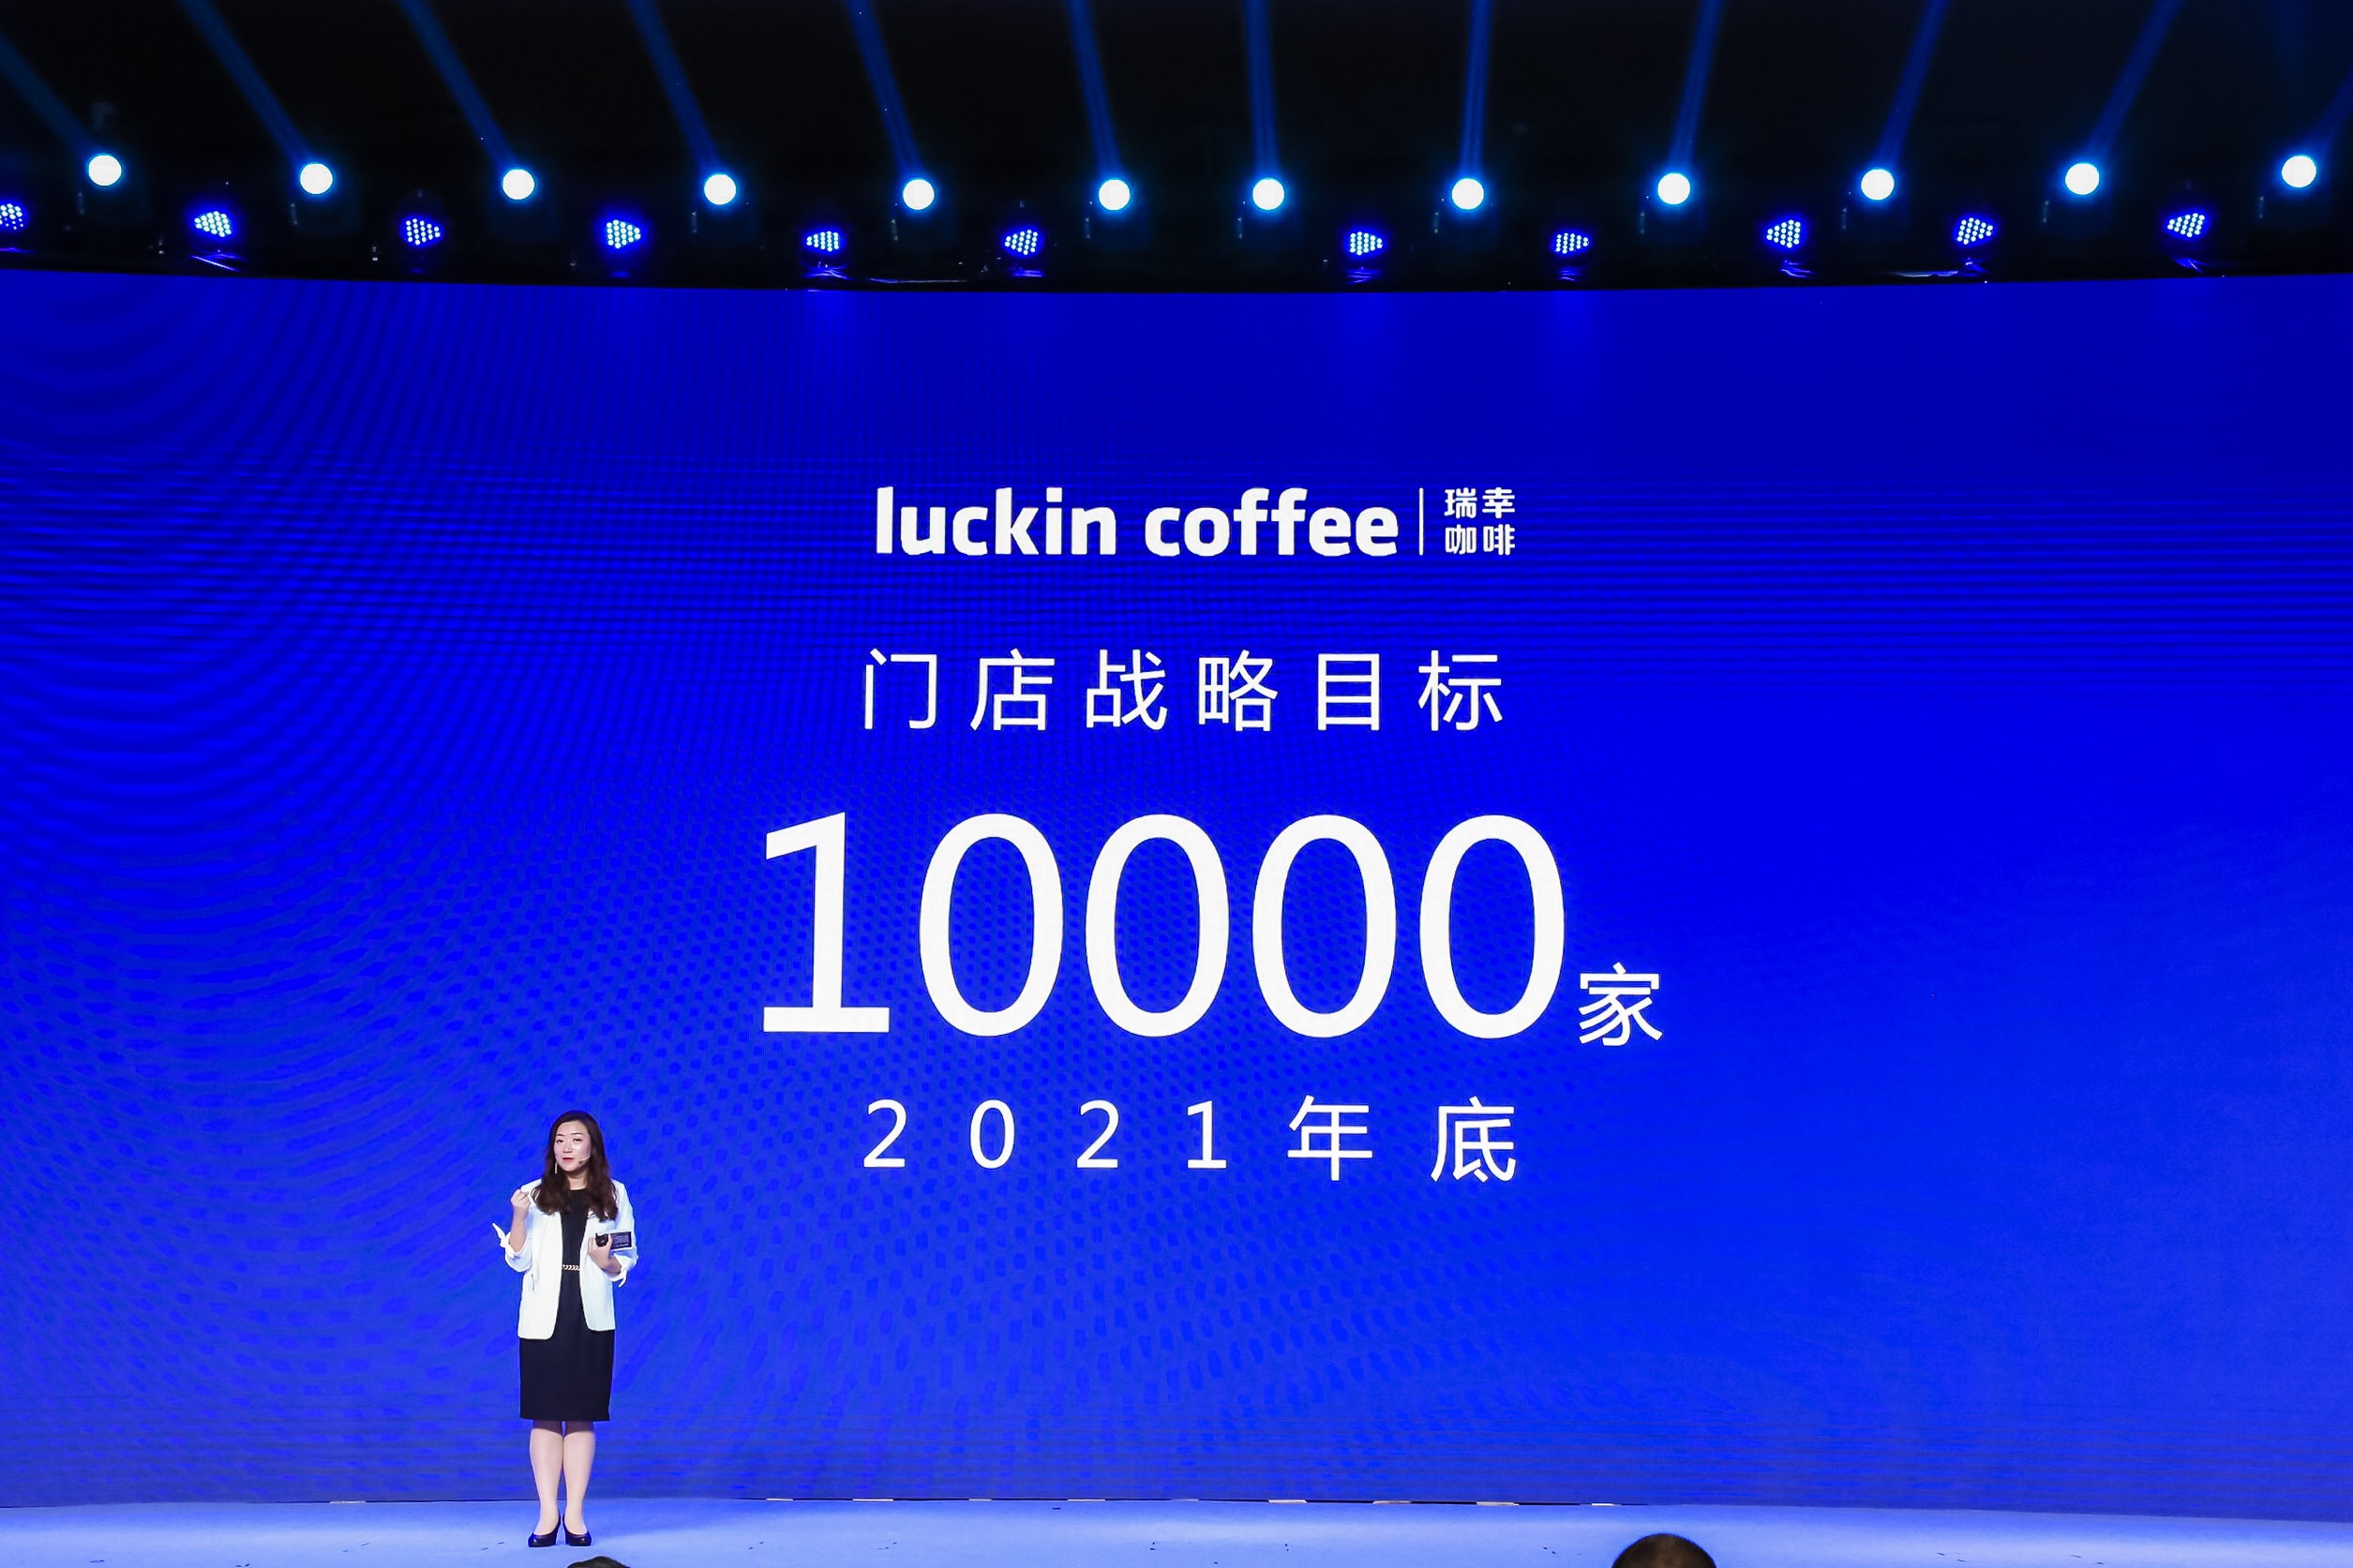 瑞幸創始人兼CEO錢治亞在會上宣佈A瑞幸咖啡將在2021年底建成10000家門店C ]受訪者供圖^